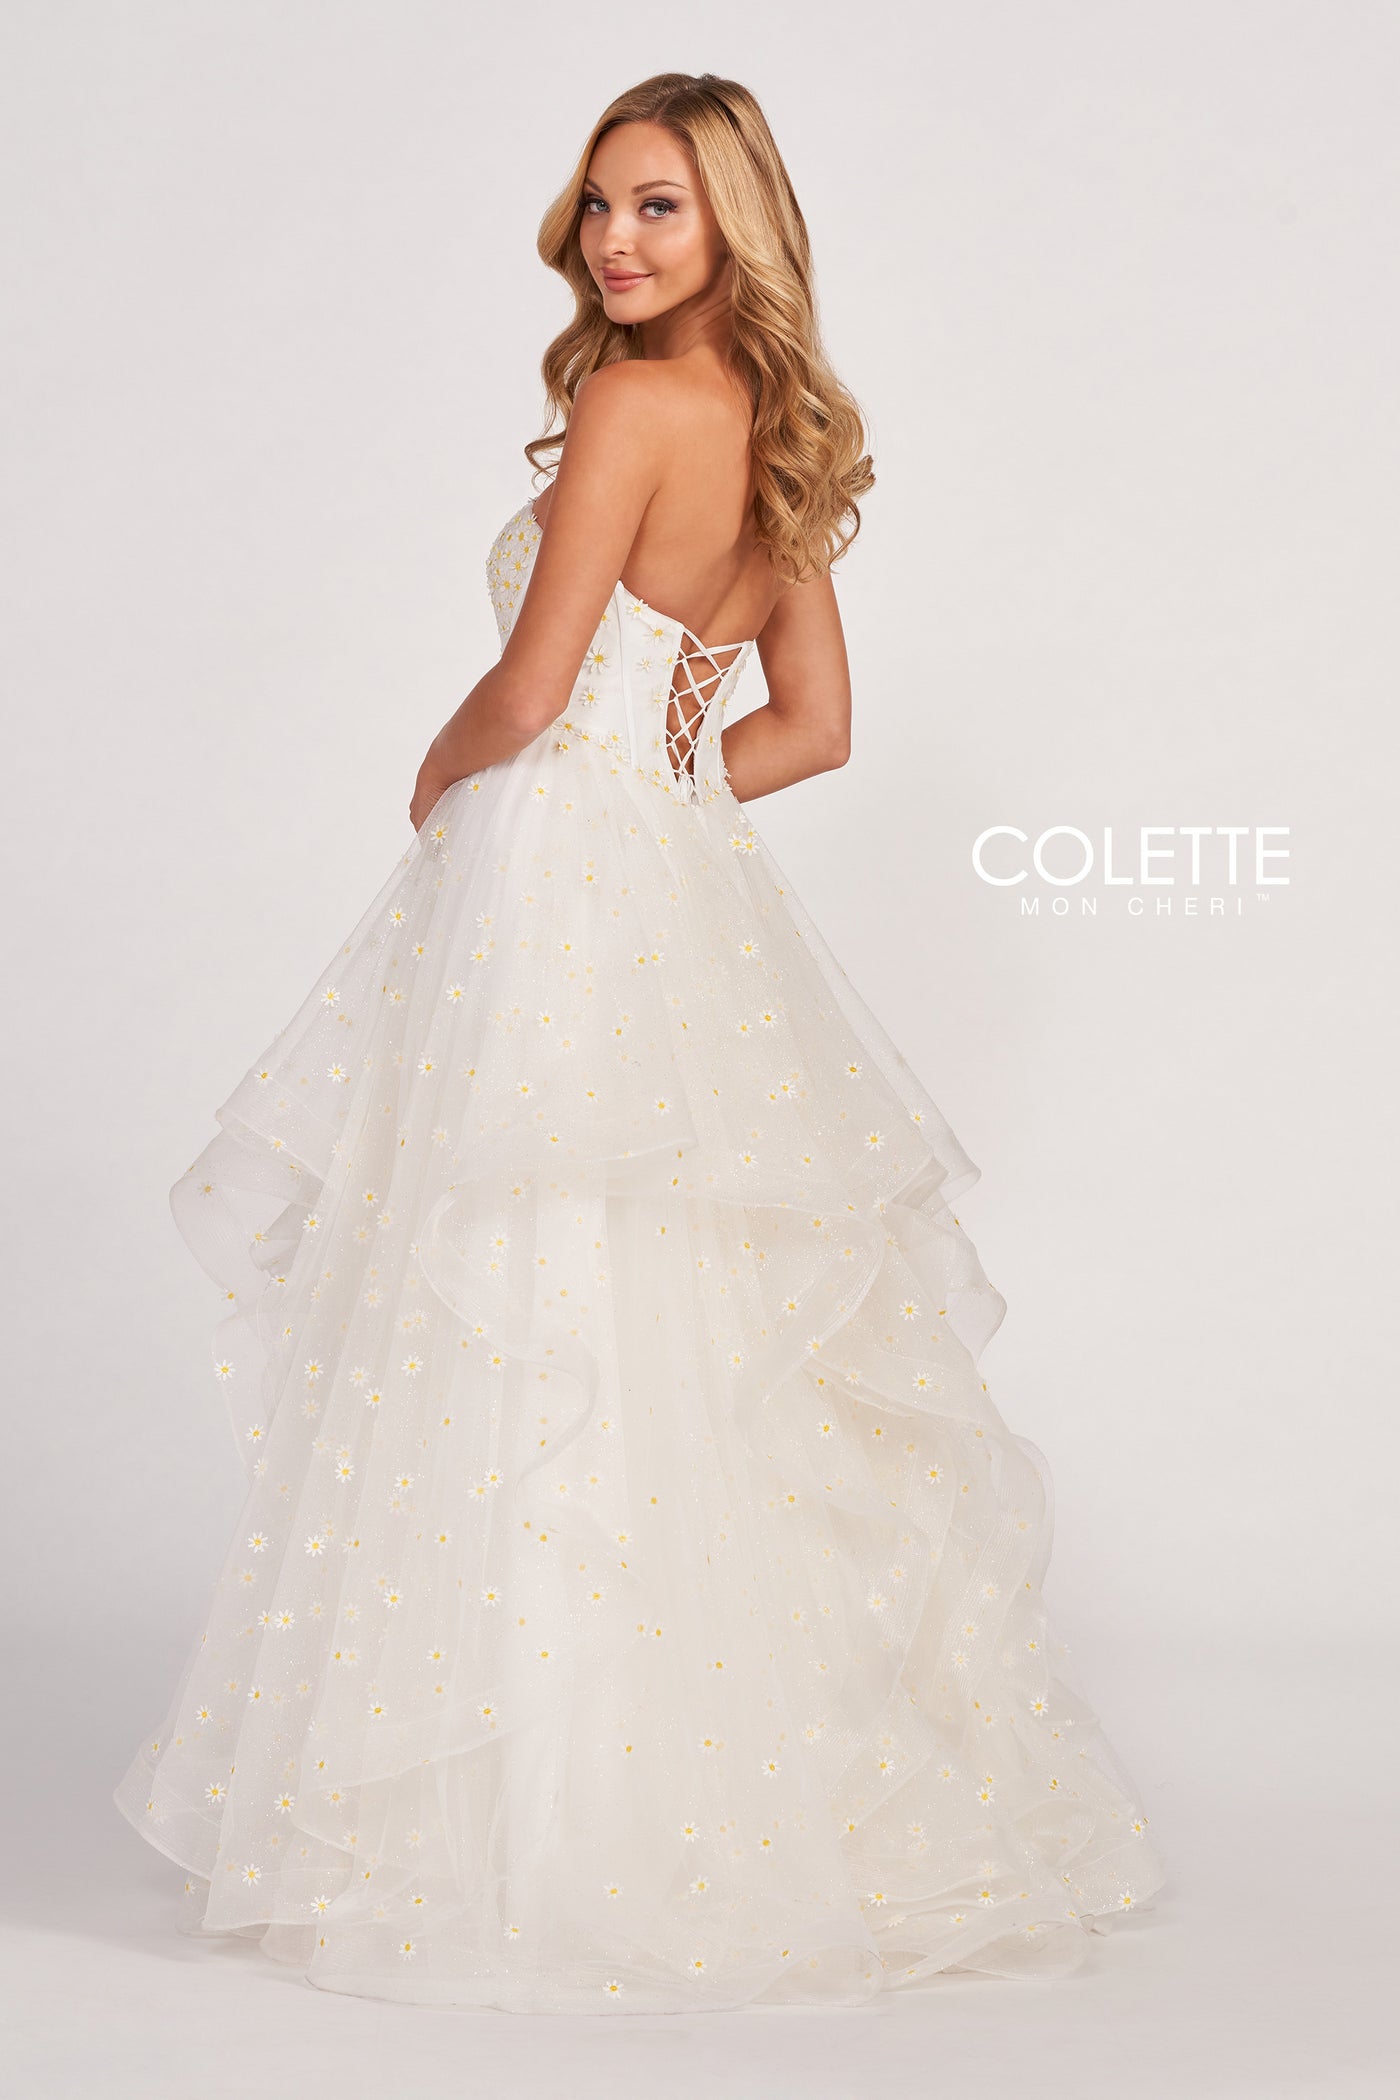 Colette CL2055 - Mydressline